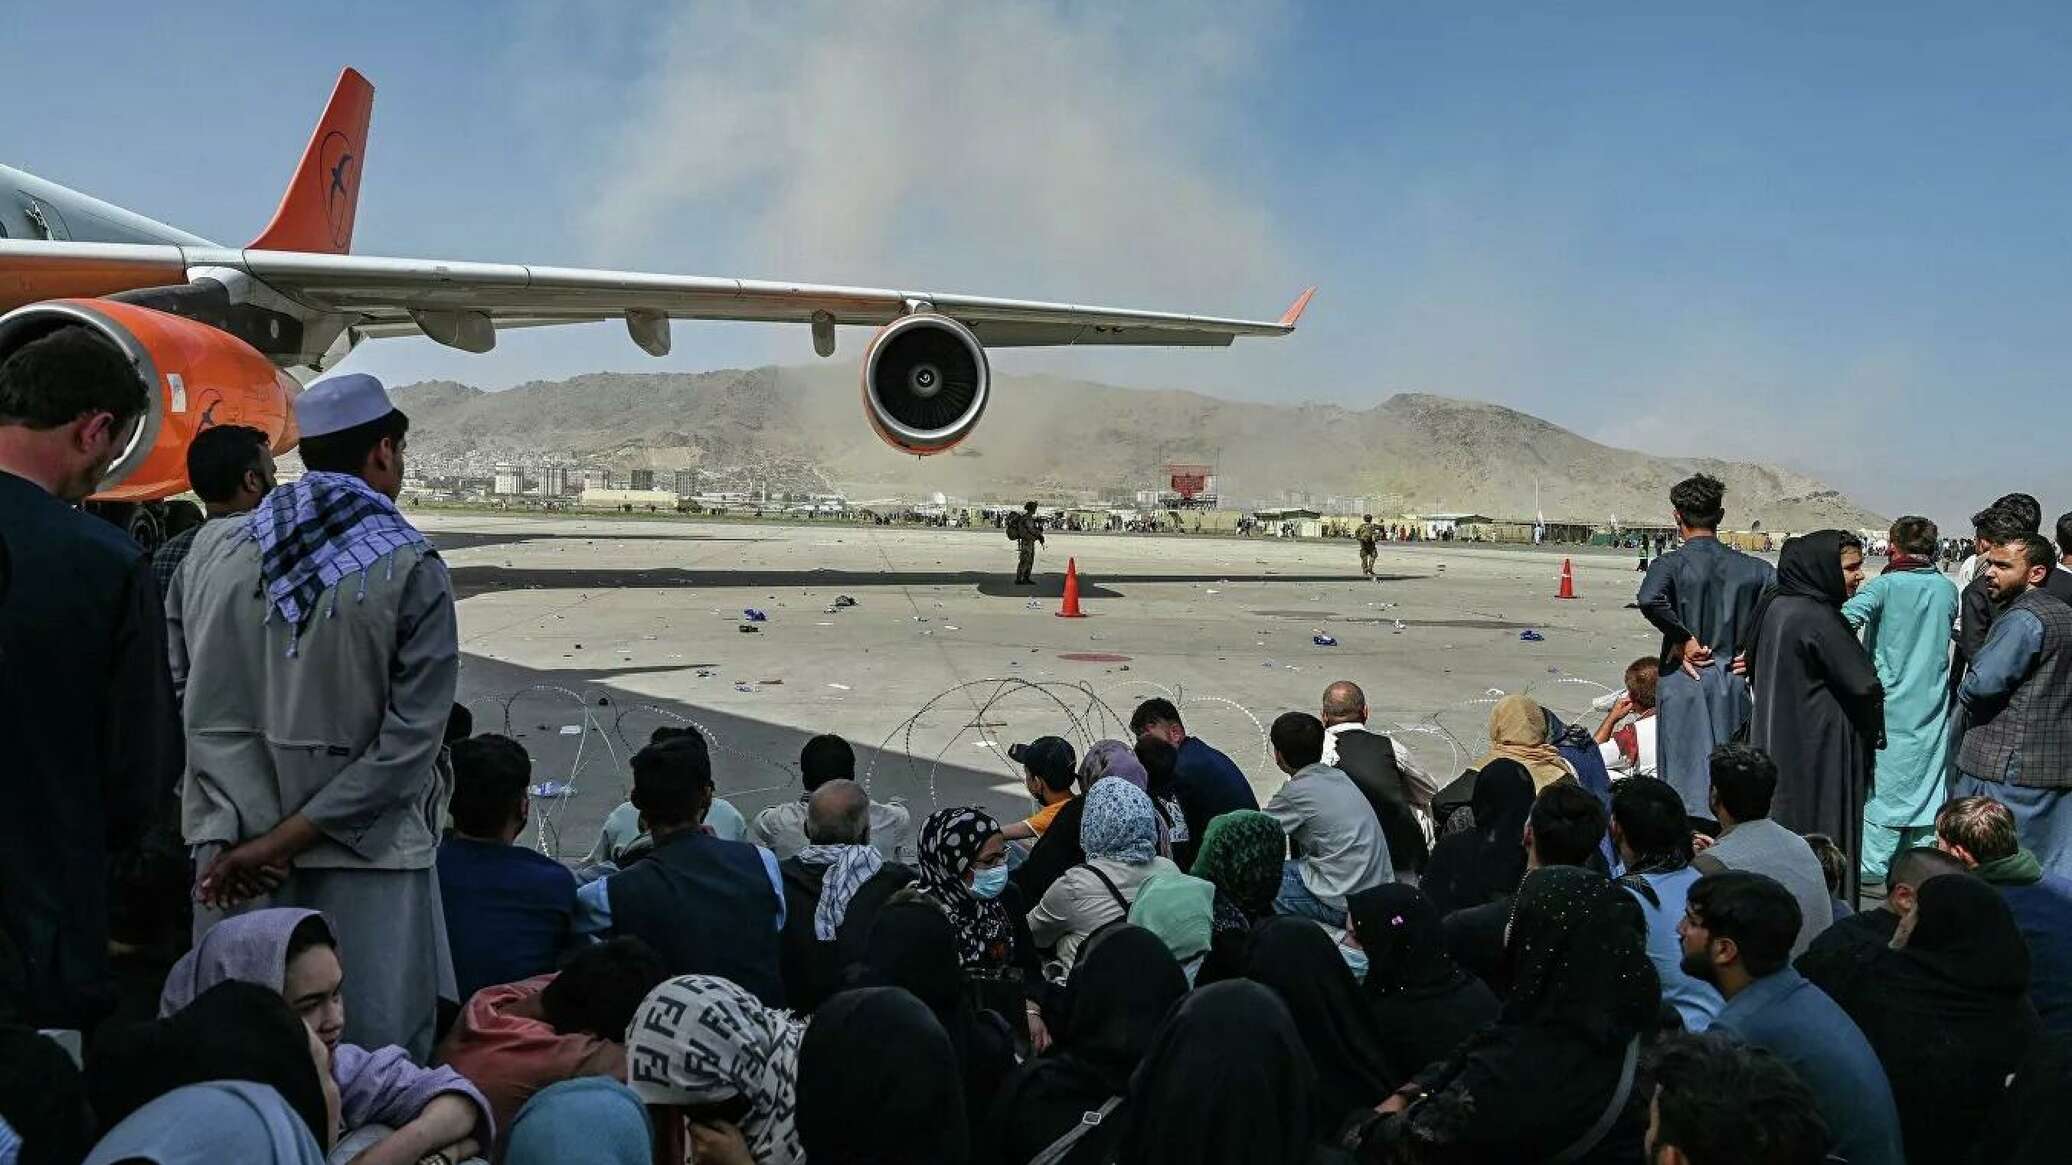 Возле аэропорта Кабула произошел взрыв: СМИ сообщают о более десяти погибших и раненых (видео)